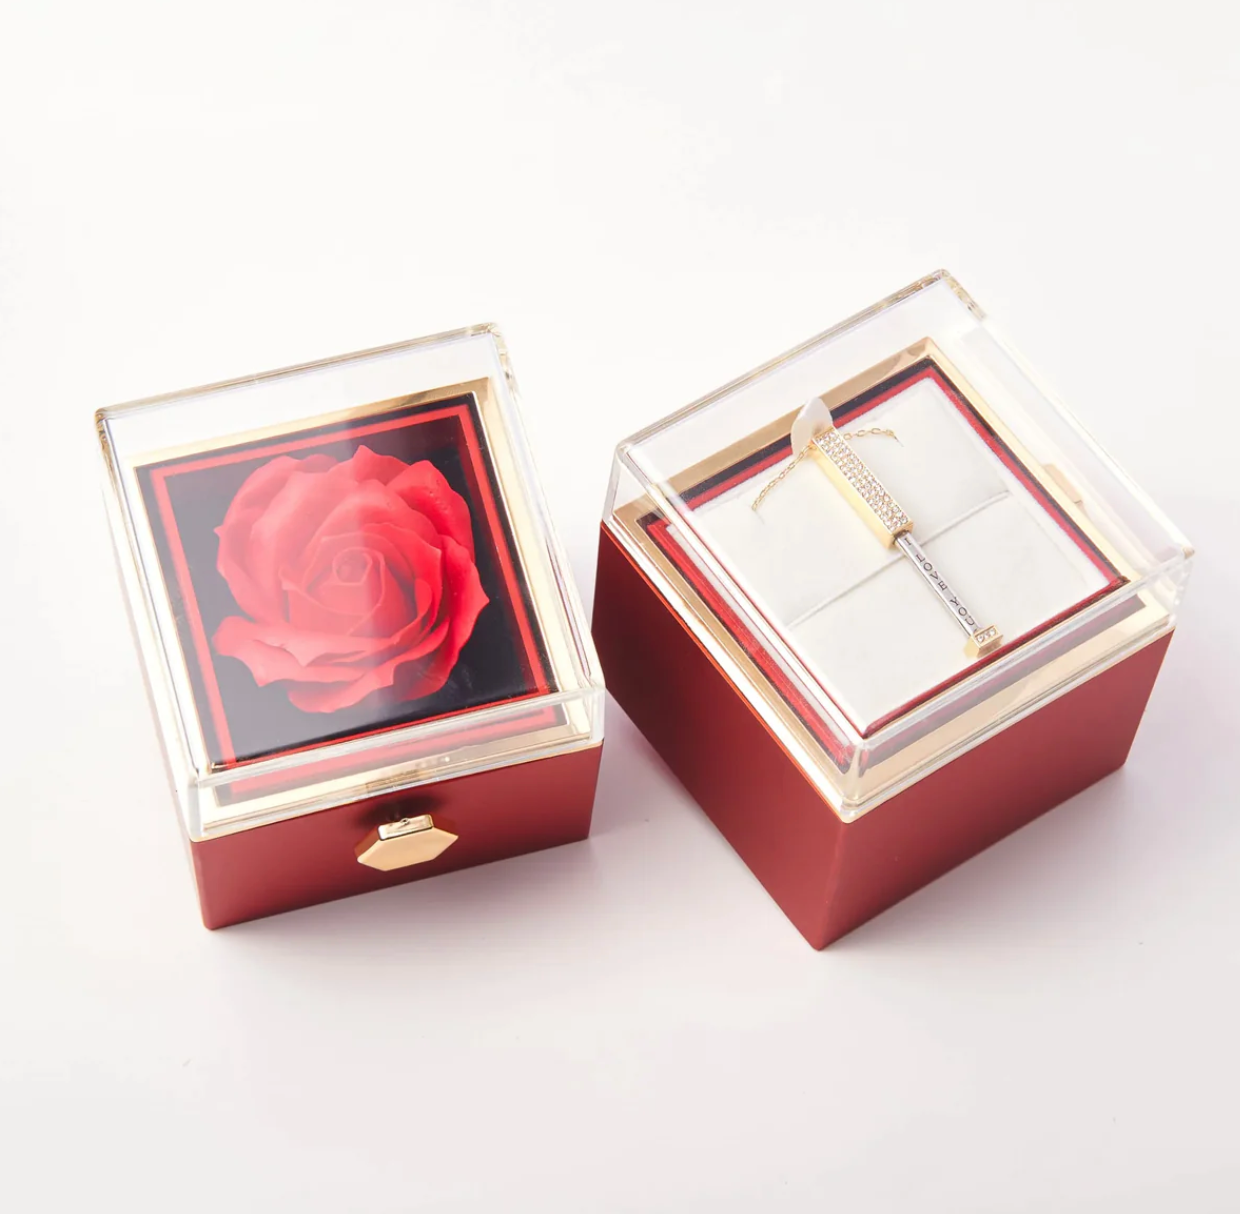 Everlasting rose gift box